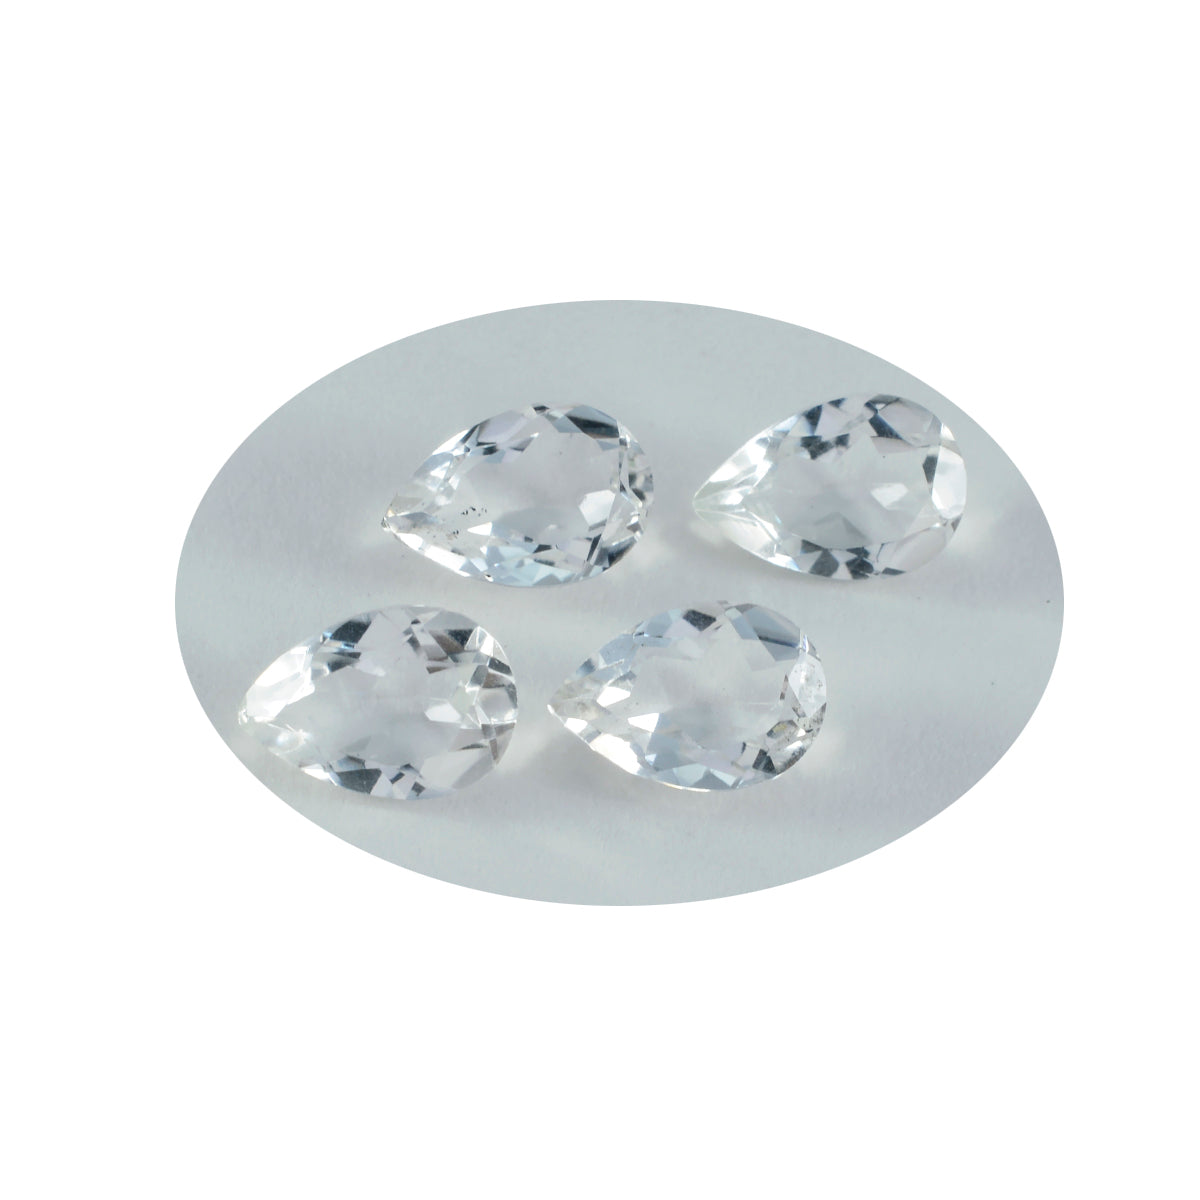 Riyogems 1 pièce de quartz cristal blanc à facettes 7x10mm en forme de poire, pierre précieuse de qualité surprenante